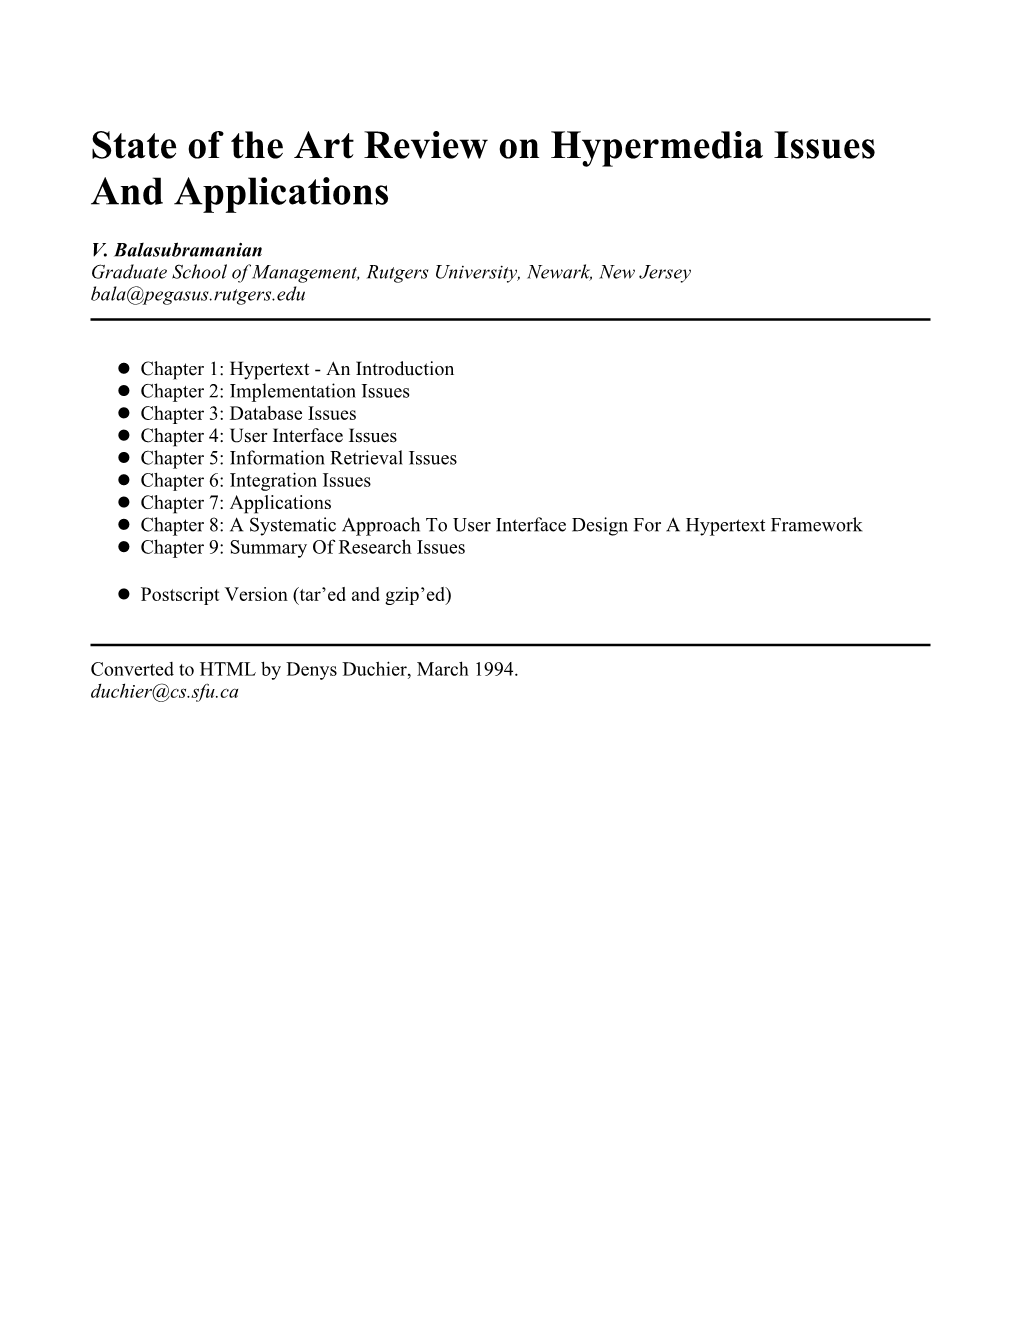 Hypertext Reviews, Proceedings of Hypertext ’91, 1991